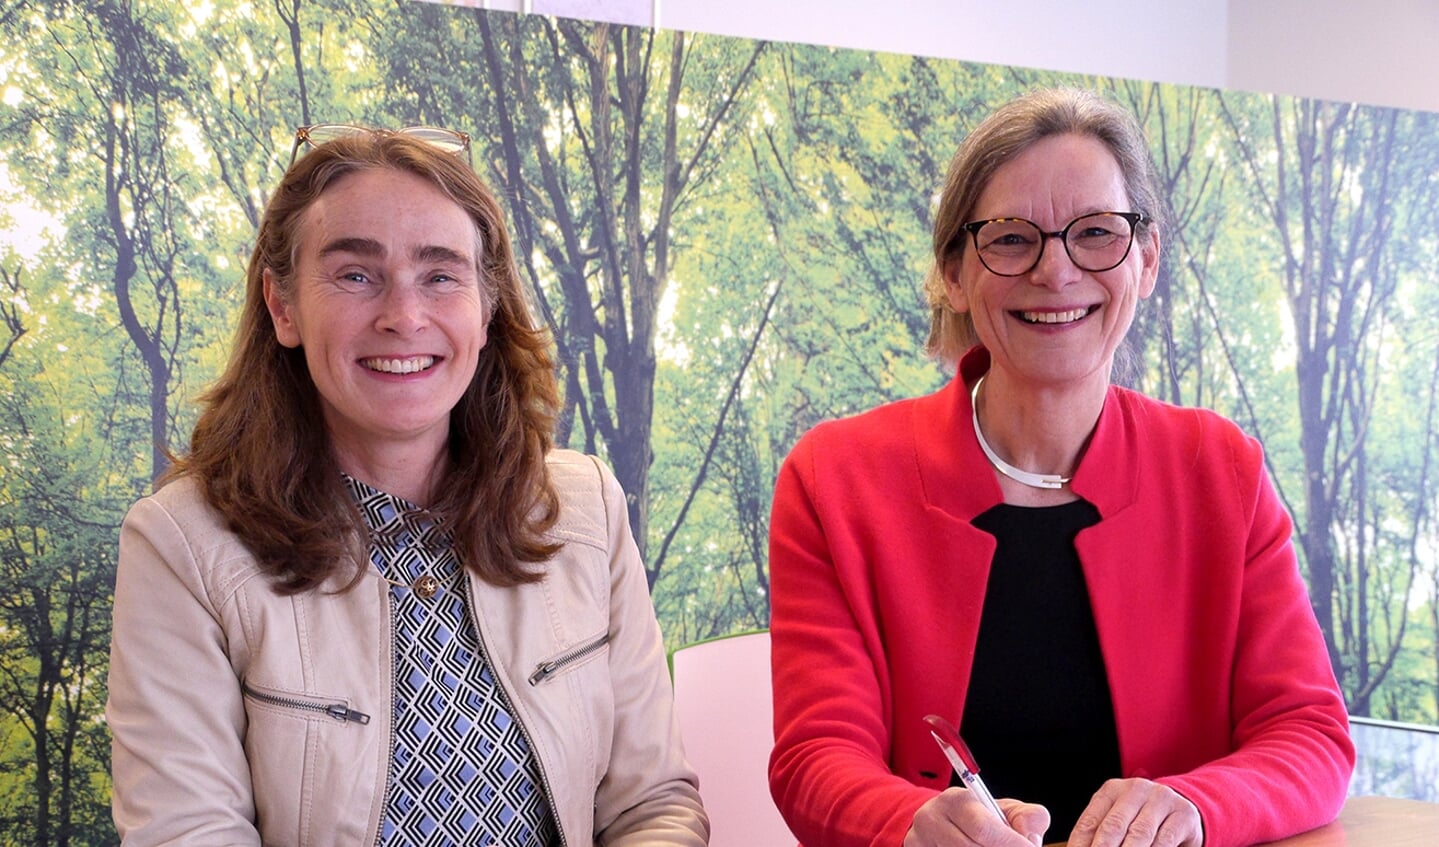 Bestuurders Ilse van Eekelen (SgOMB) en Elisabeth Pels Rijcken (DWC) tekenen fusieovereenkomst. (foto: H. de Bruijn)